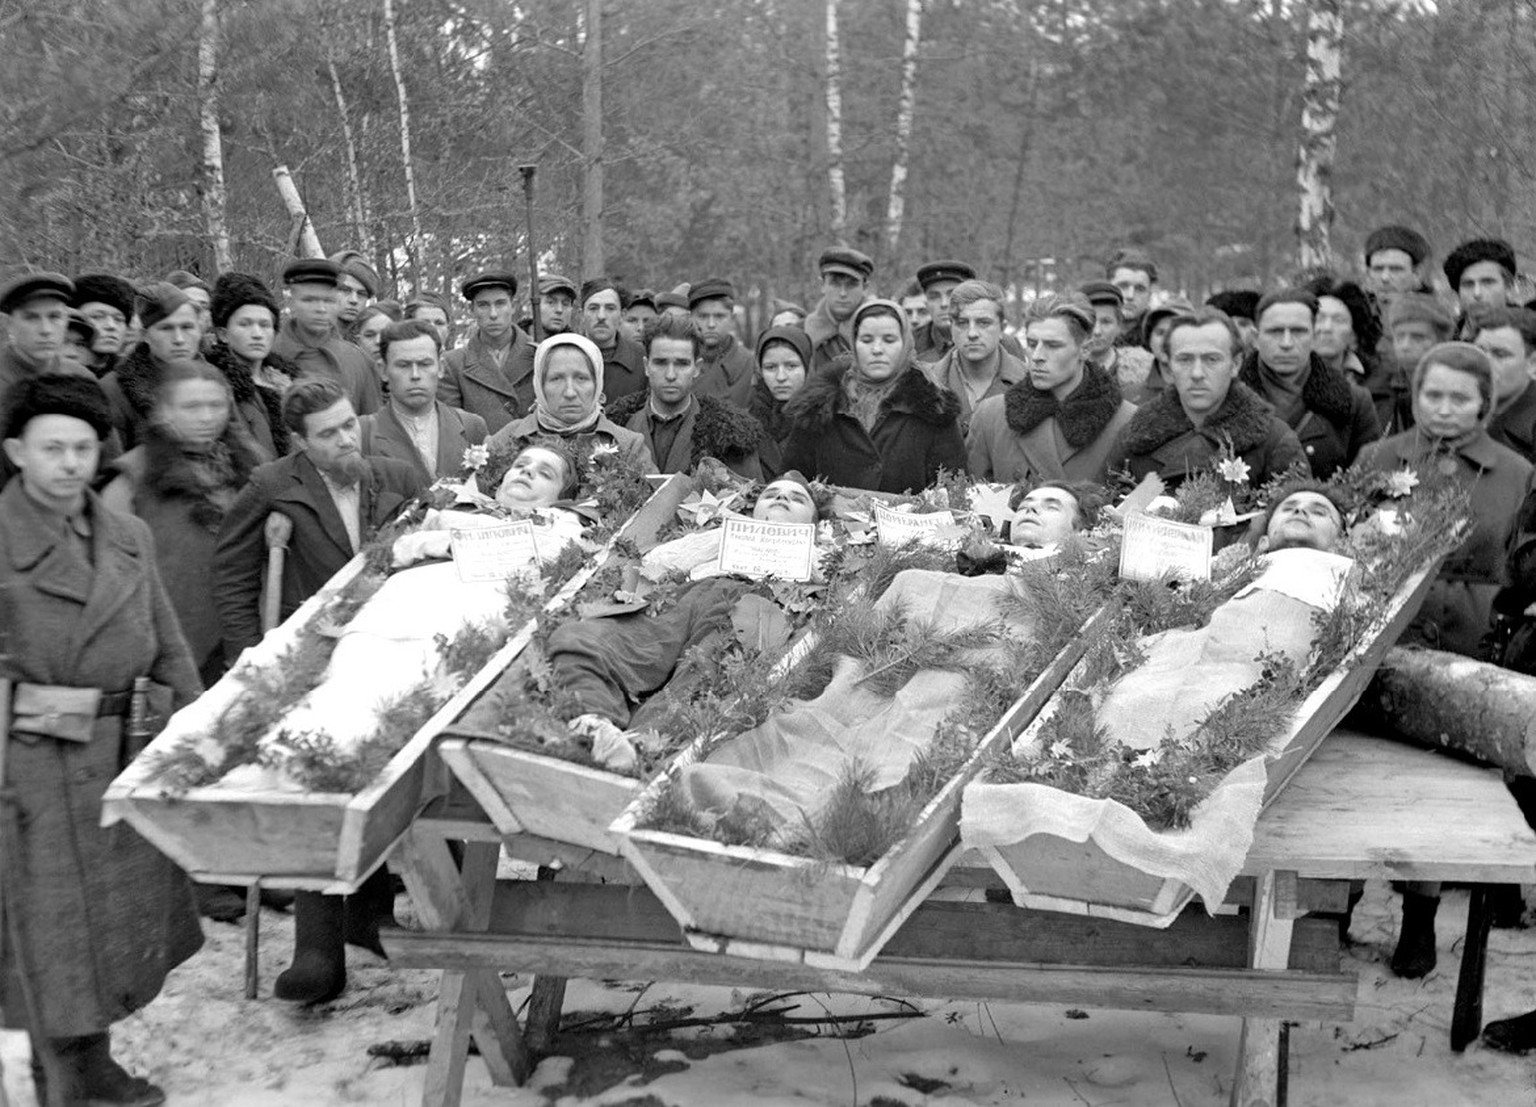 Im Tode versöhnt: Jüdische und nichtjüdische Partisanen werden im selben Grab bestattet, 1943.